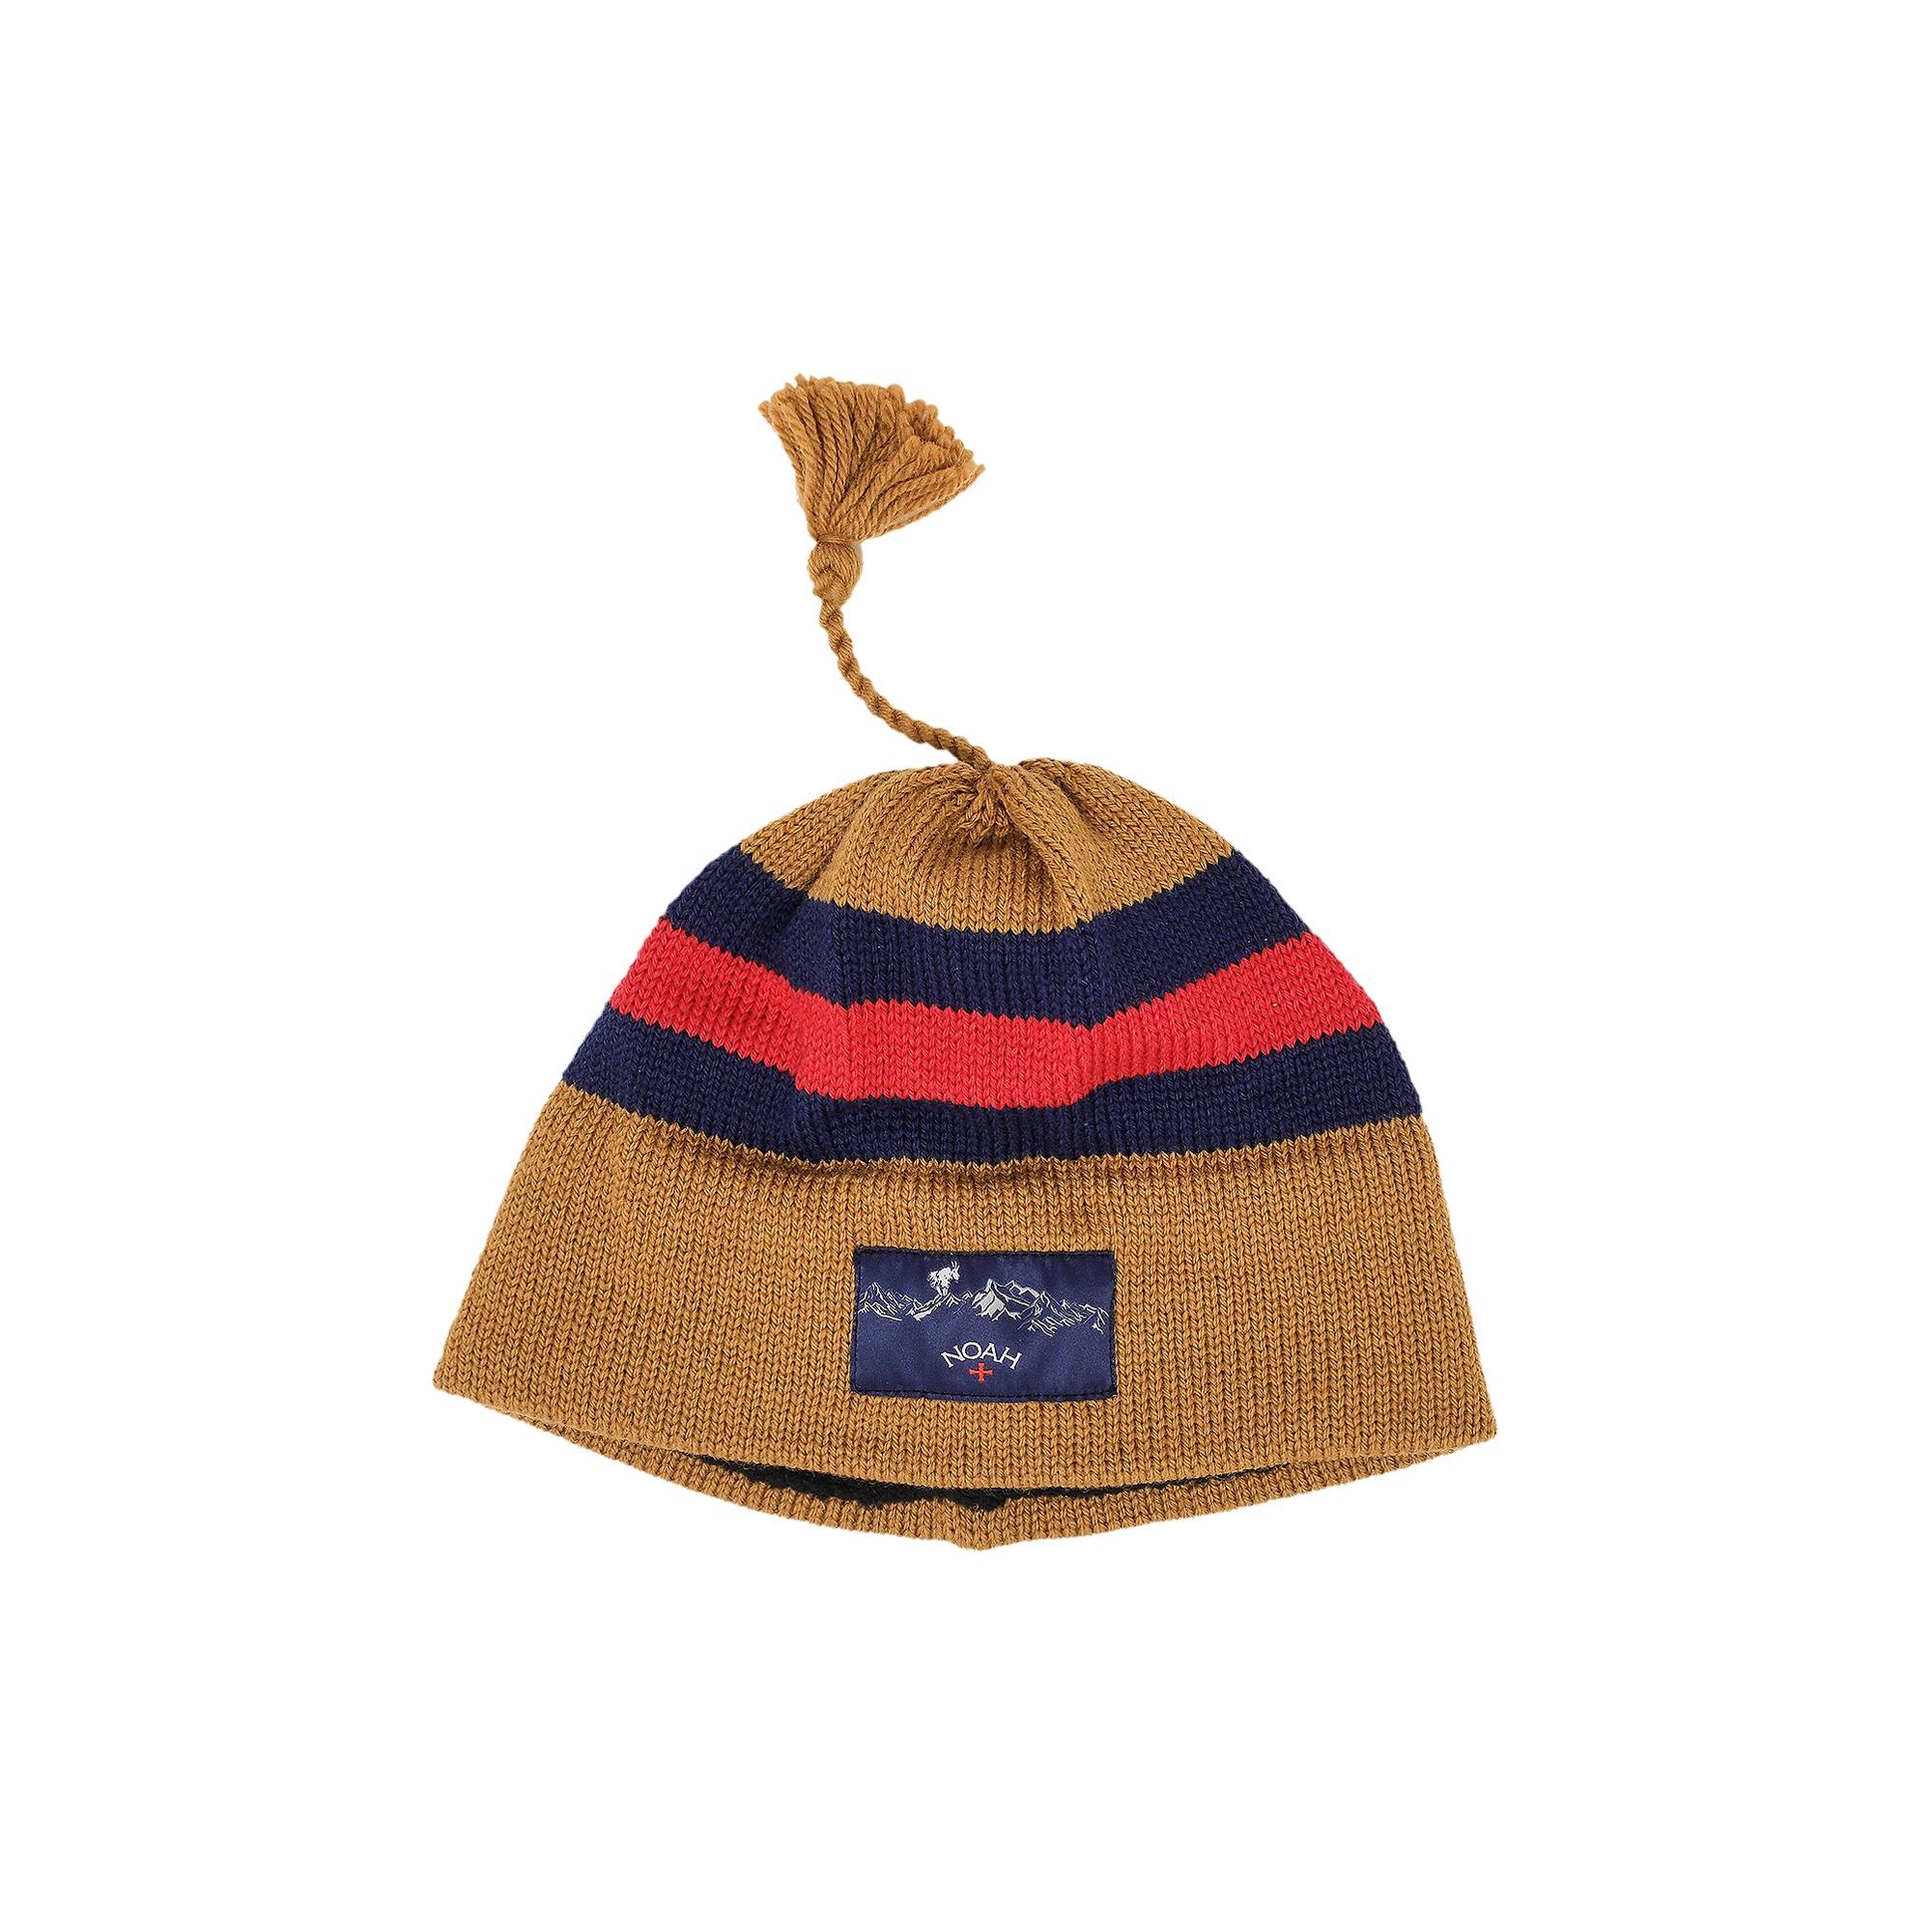 Noah Wool Ski Hat 'Tan/Navy/Red' - 1